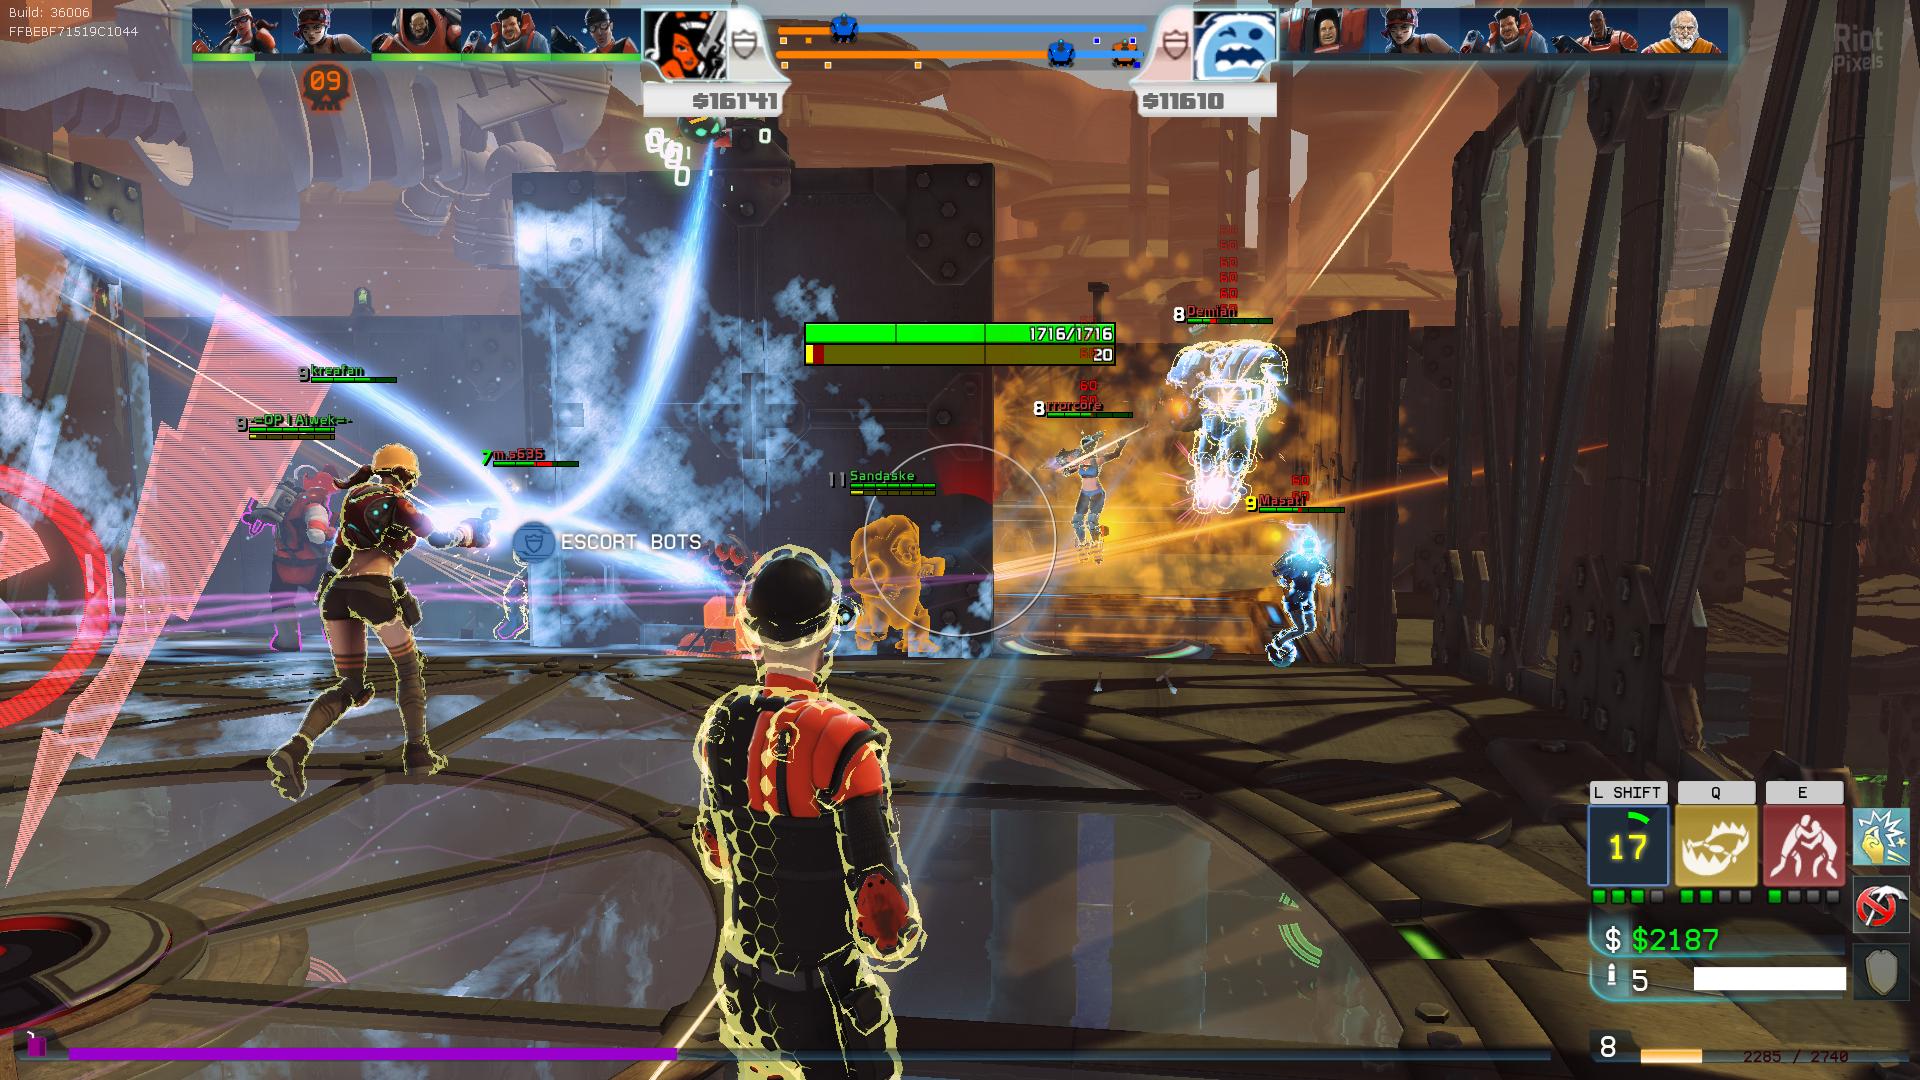 Super Monday Night Combat - game screenshots at Riot Pixels, images